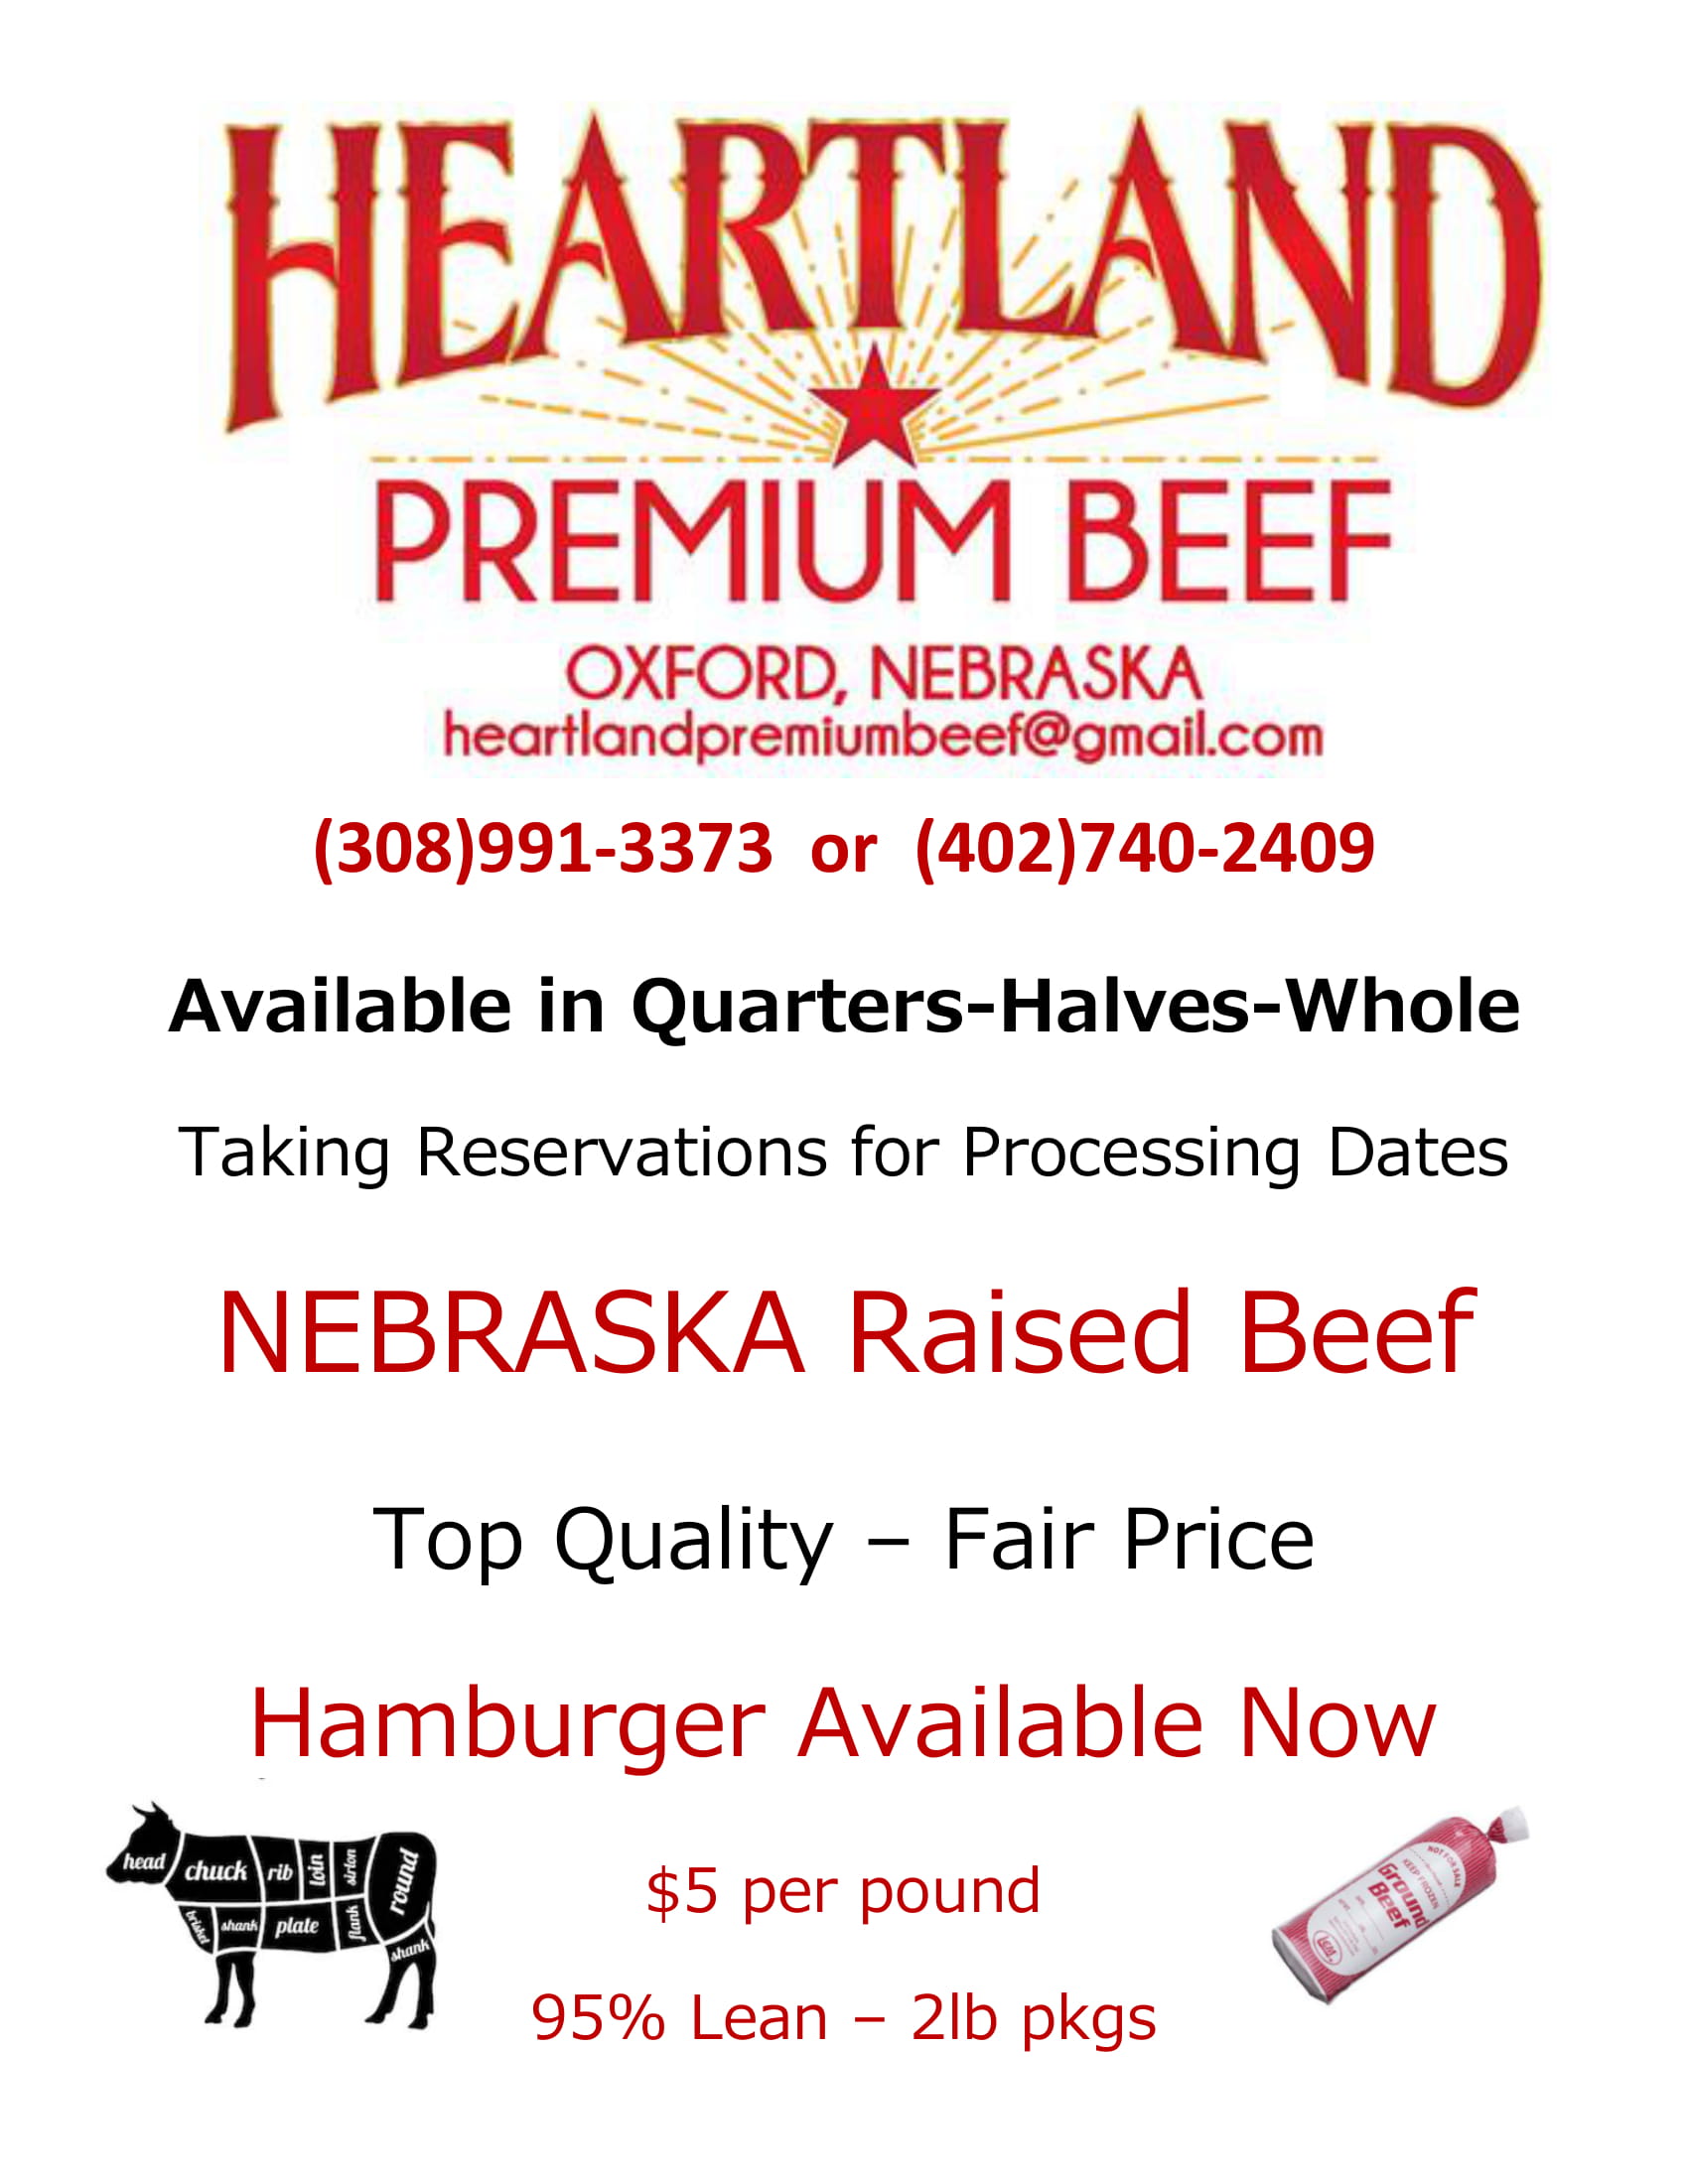 Heartland Premium Beef Flyer 1